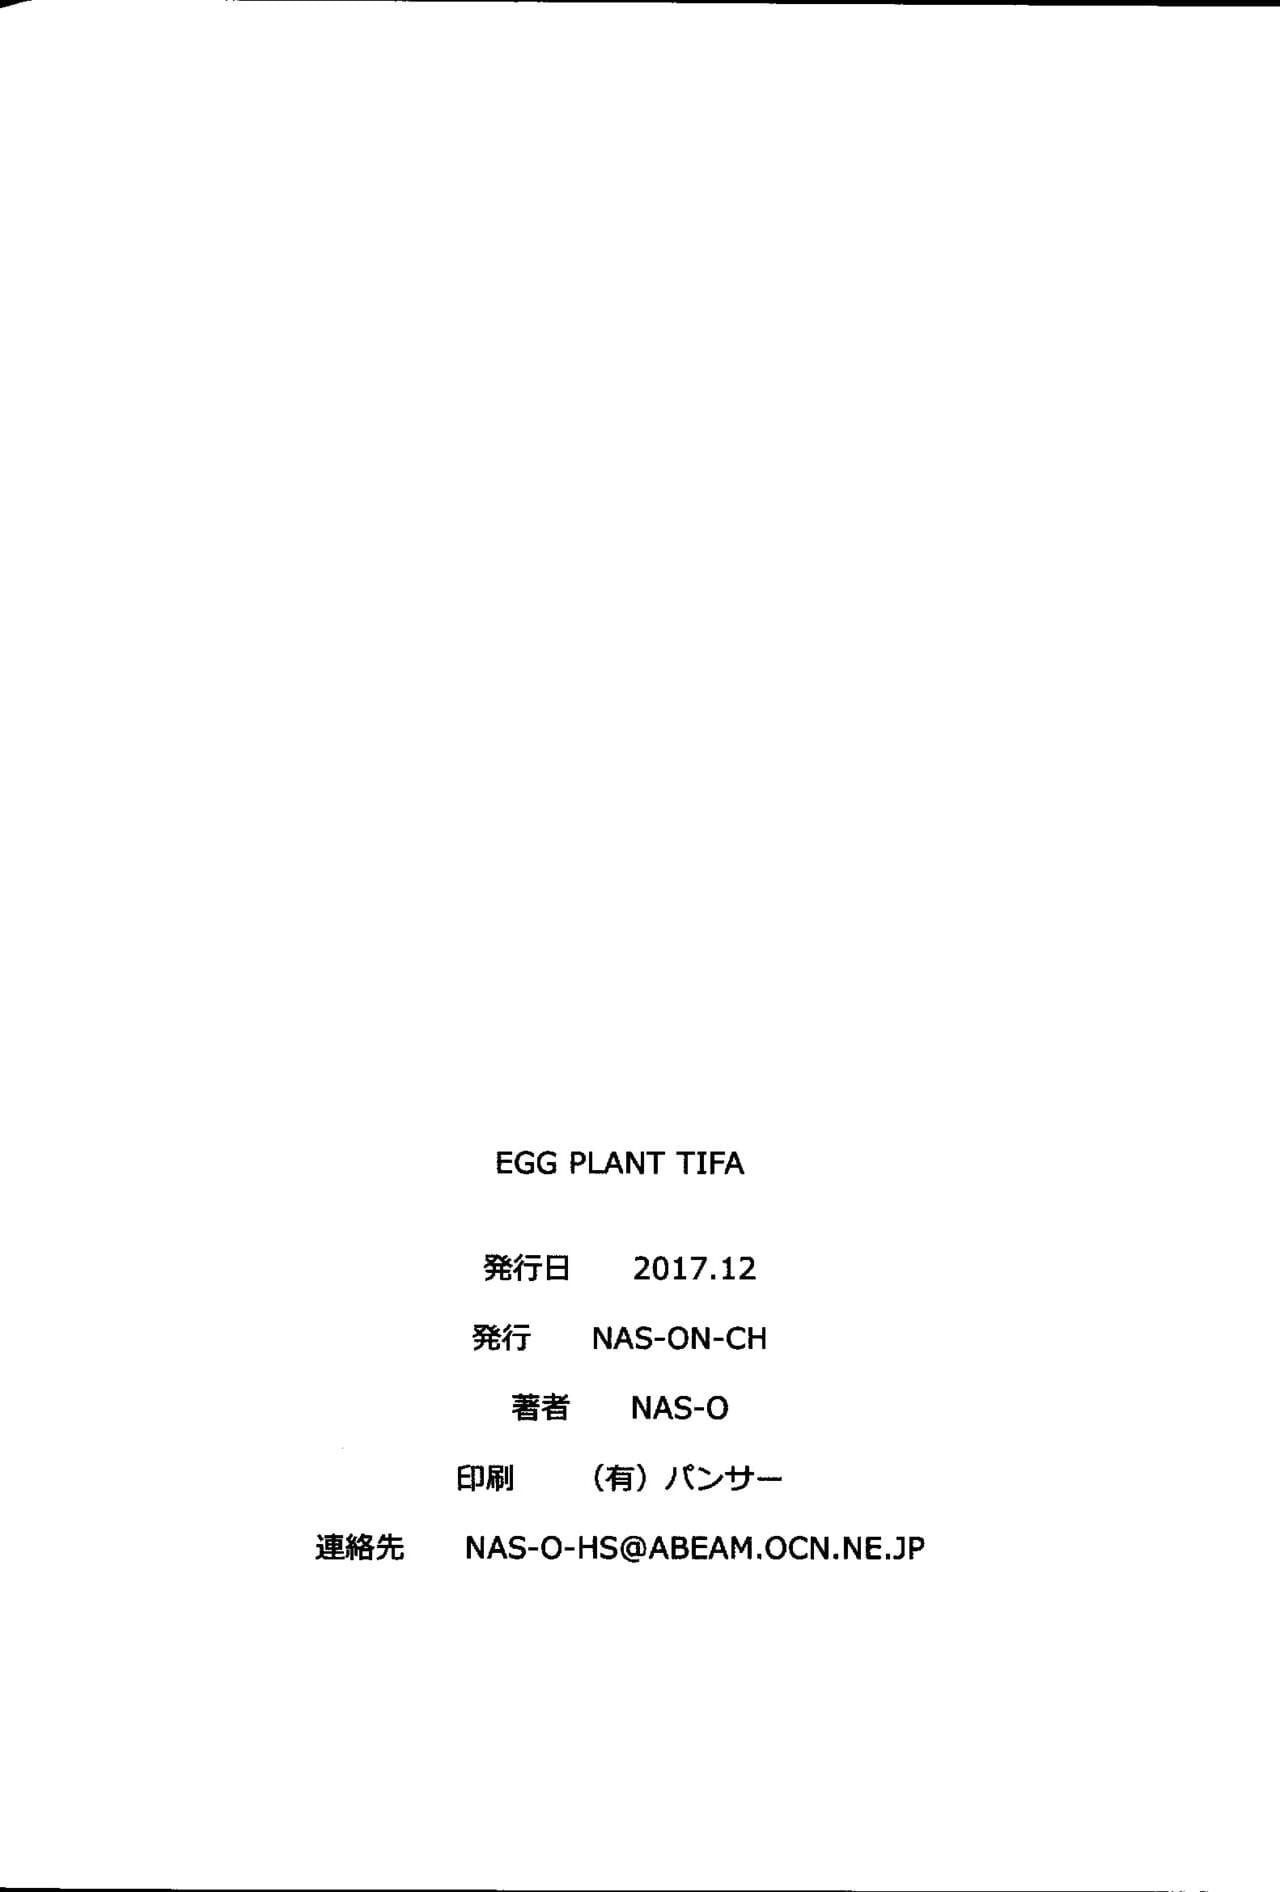 yumurta bitki tifa page 1